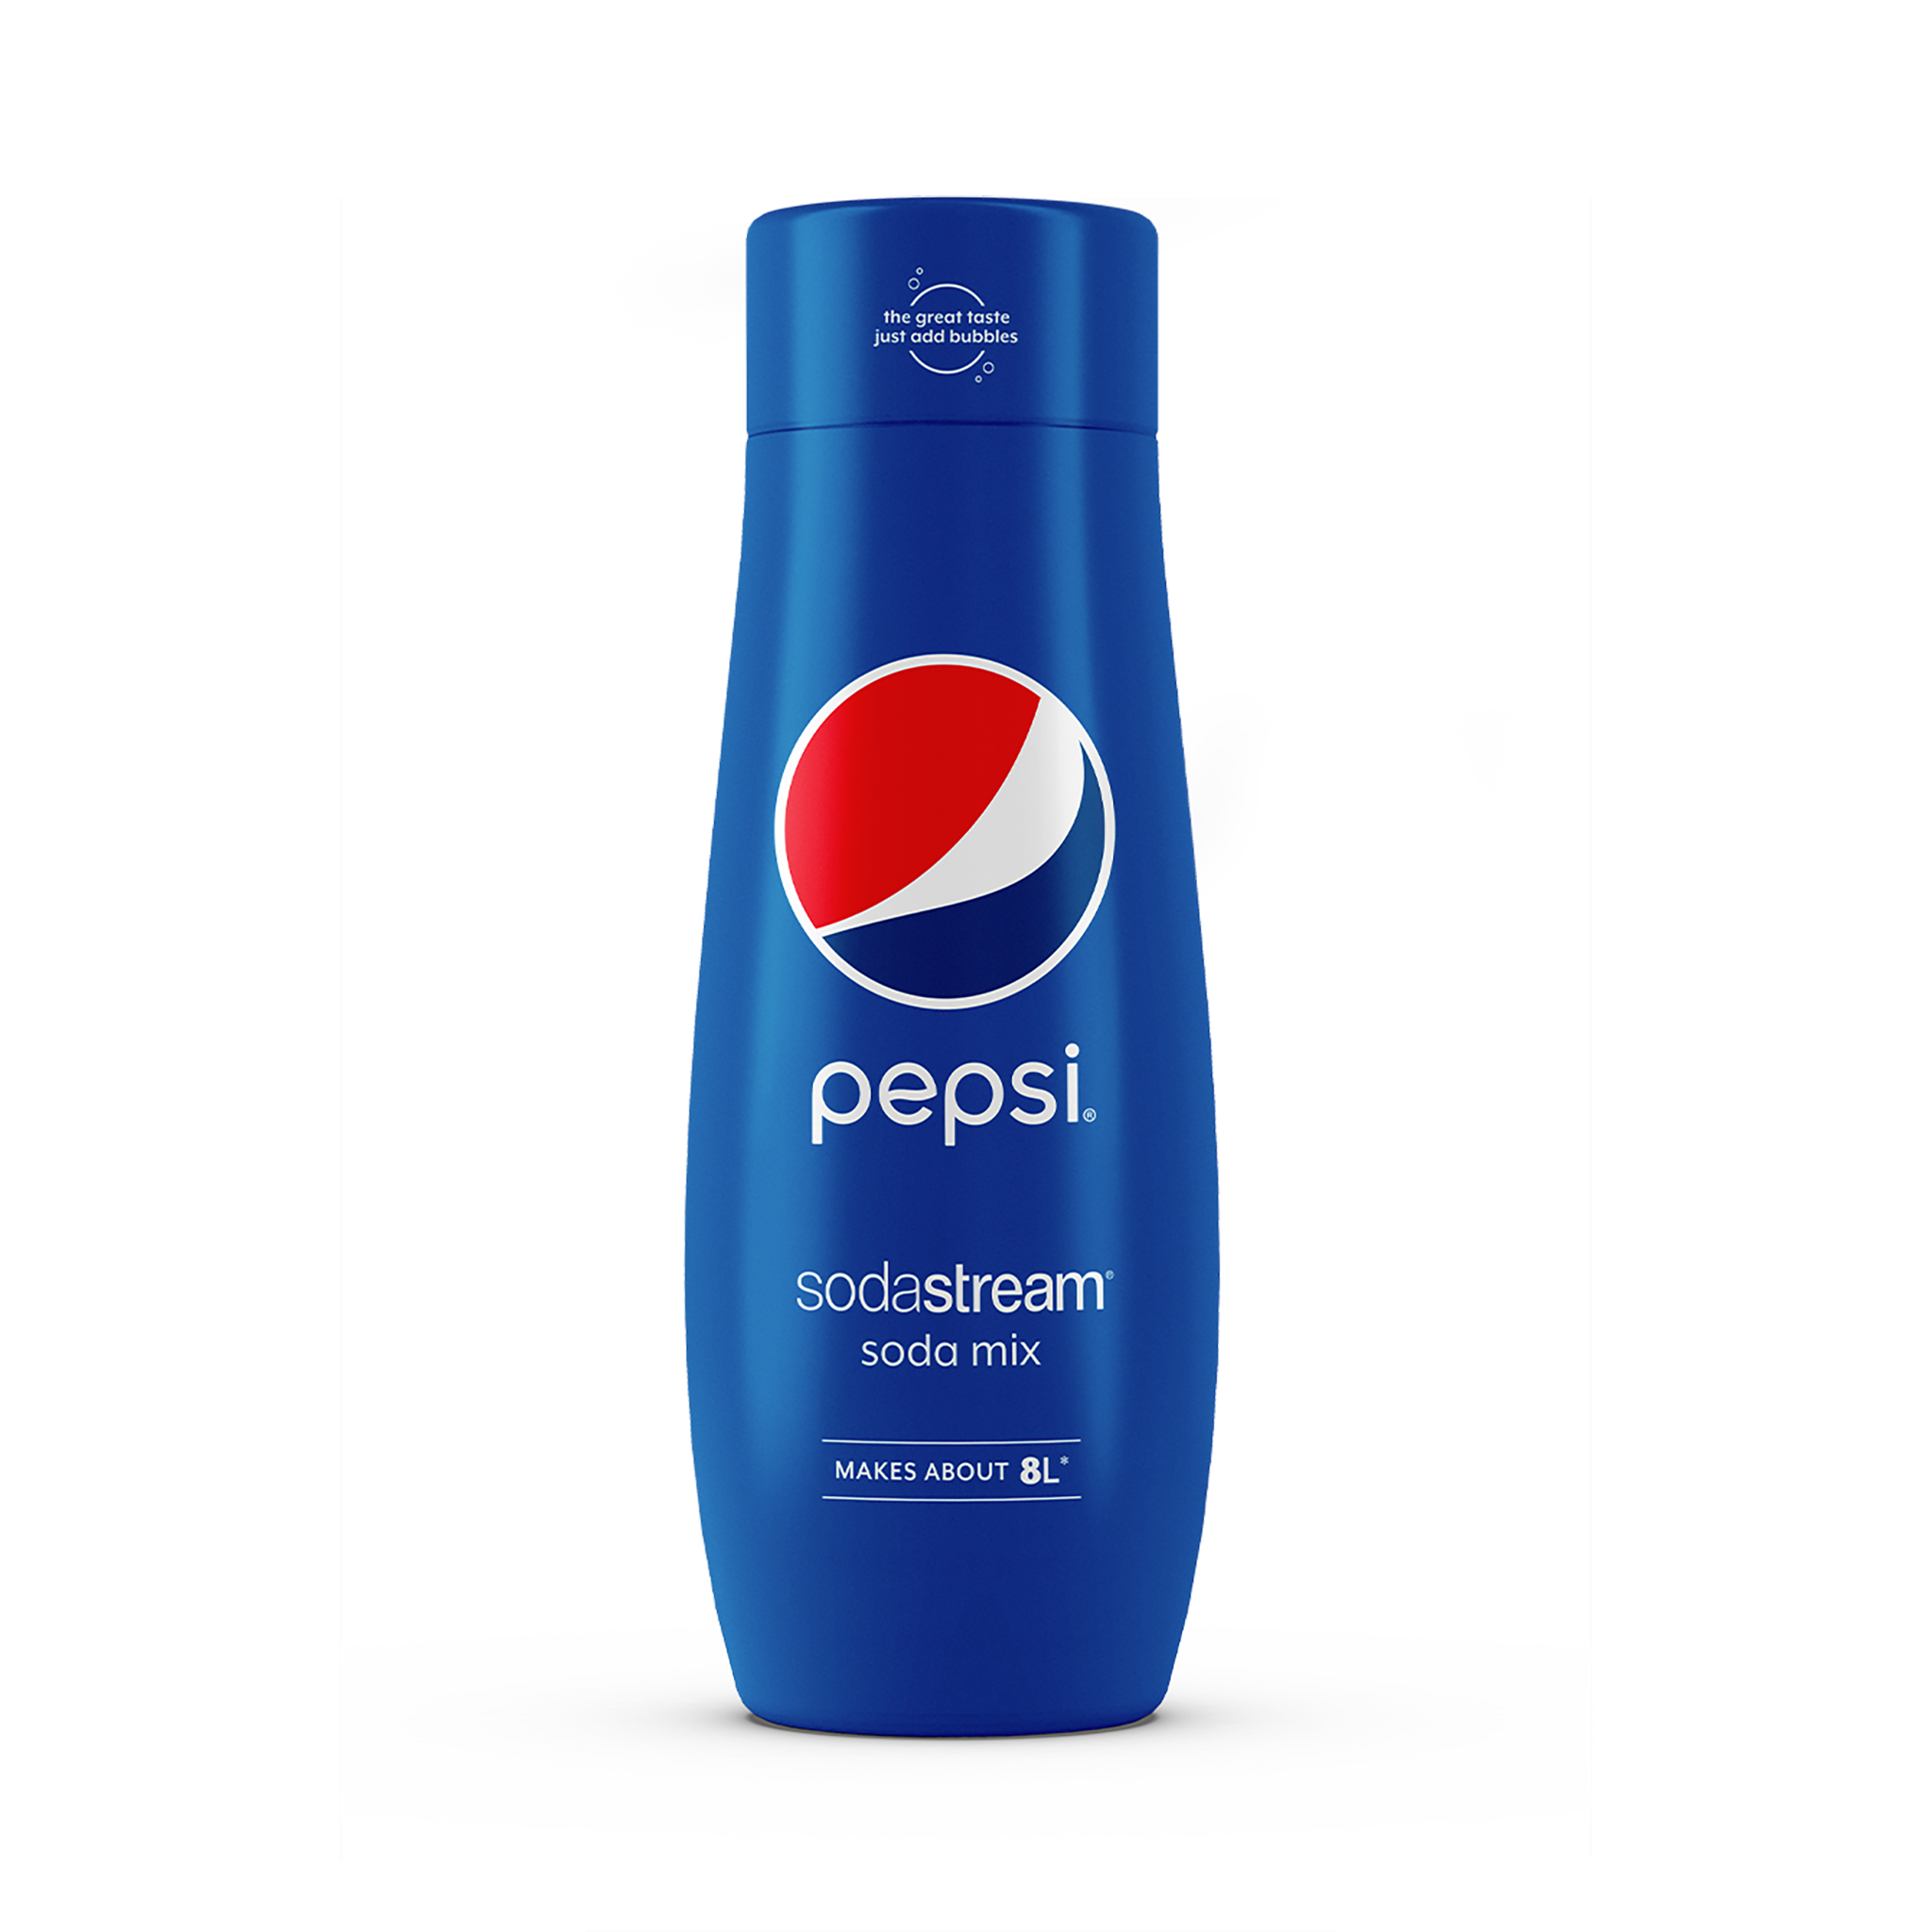 Pepsi sodastream